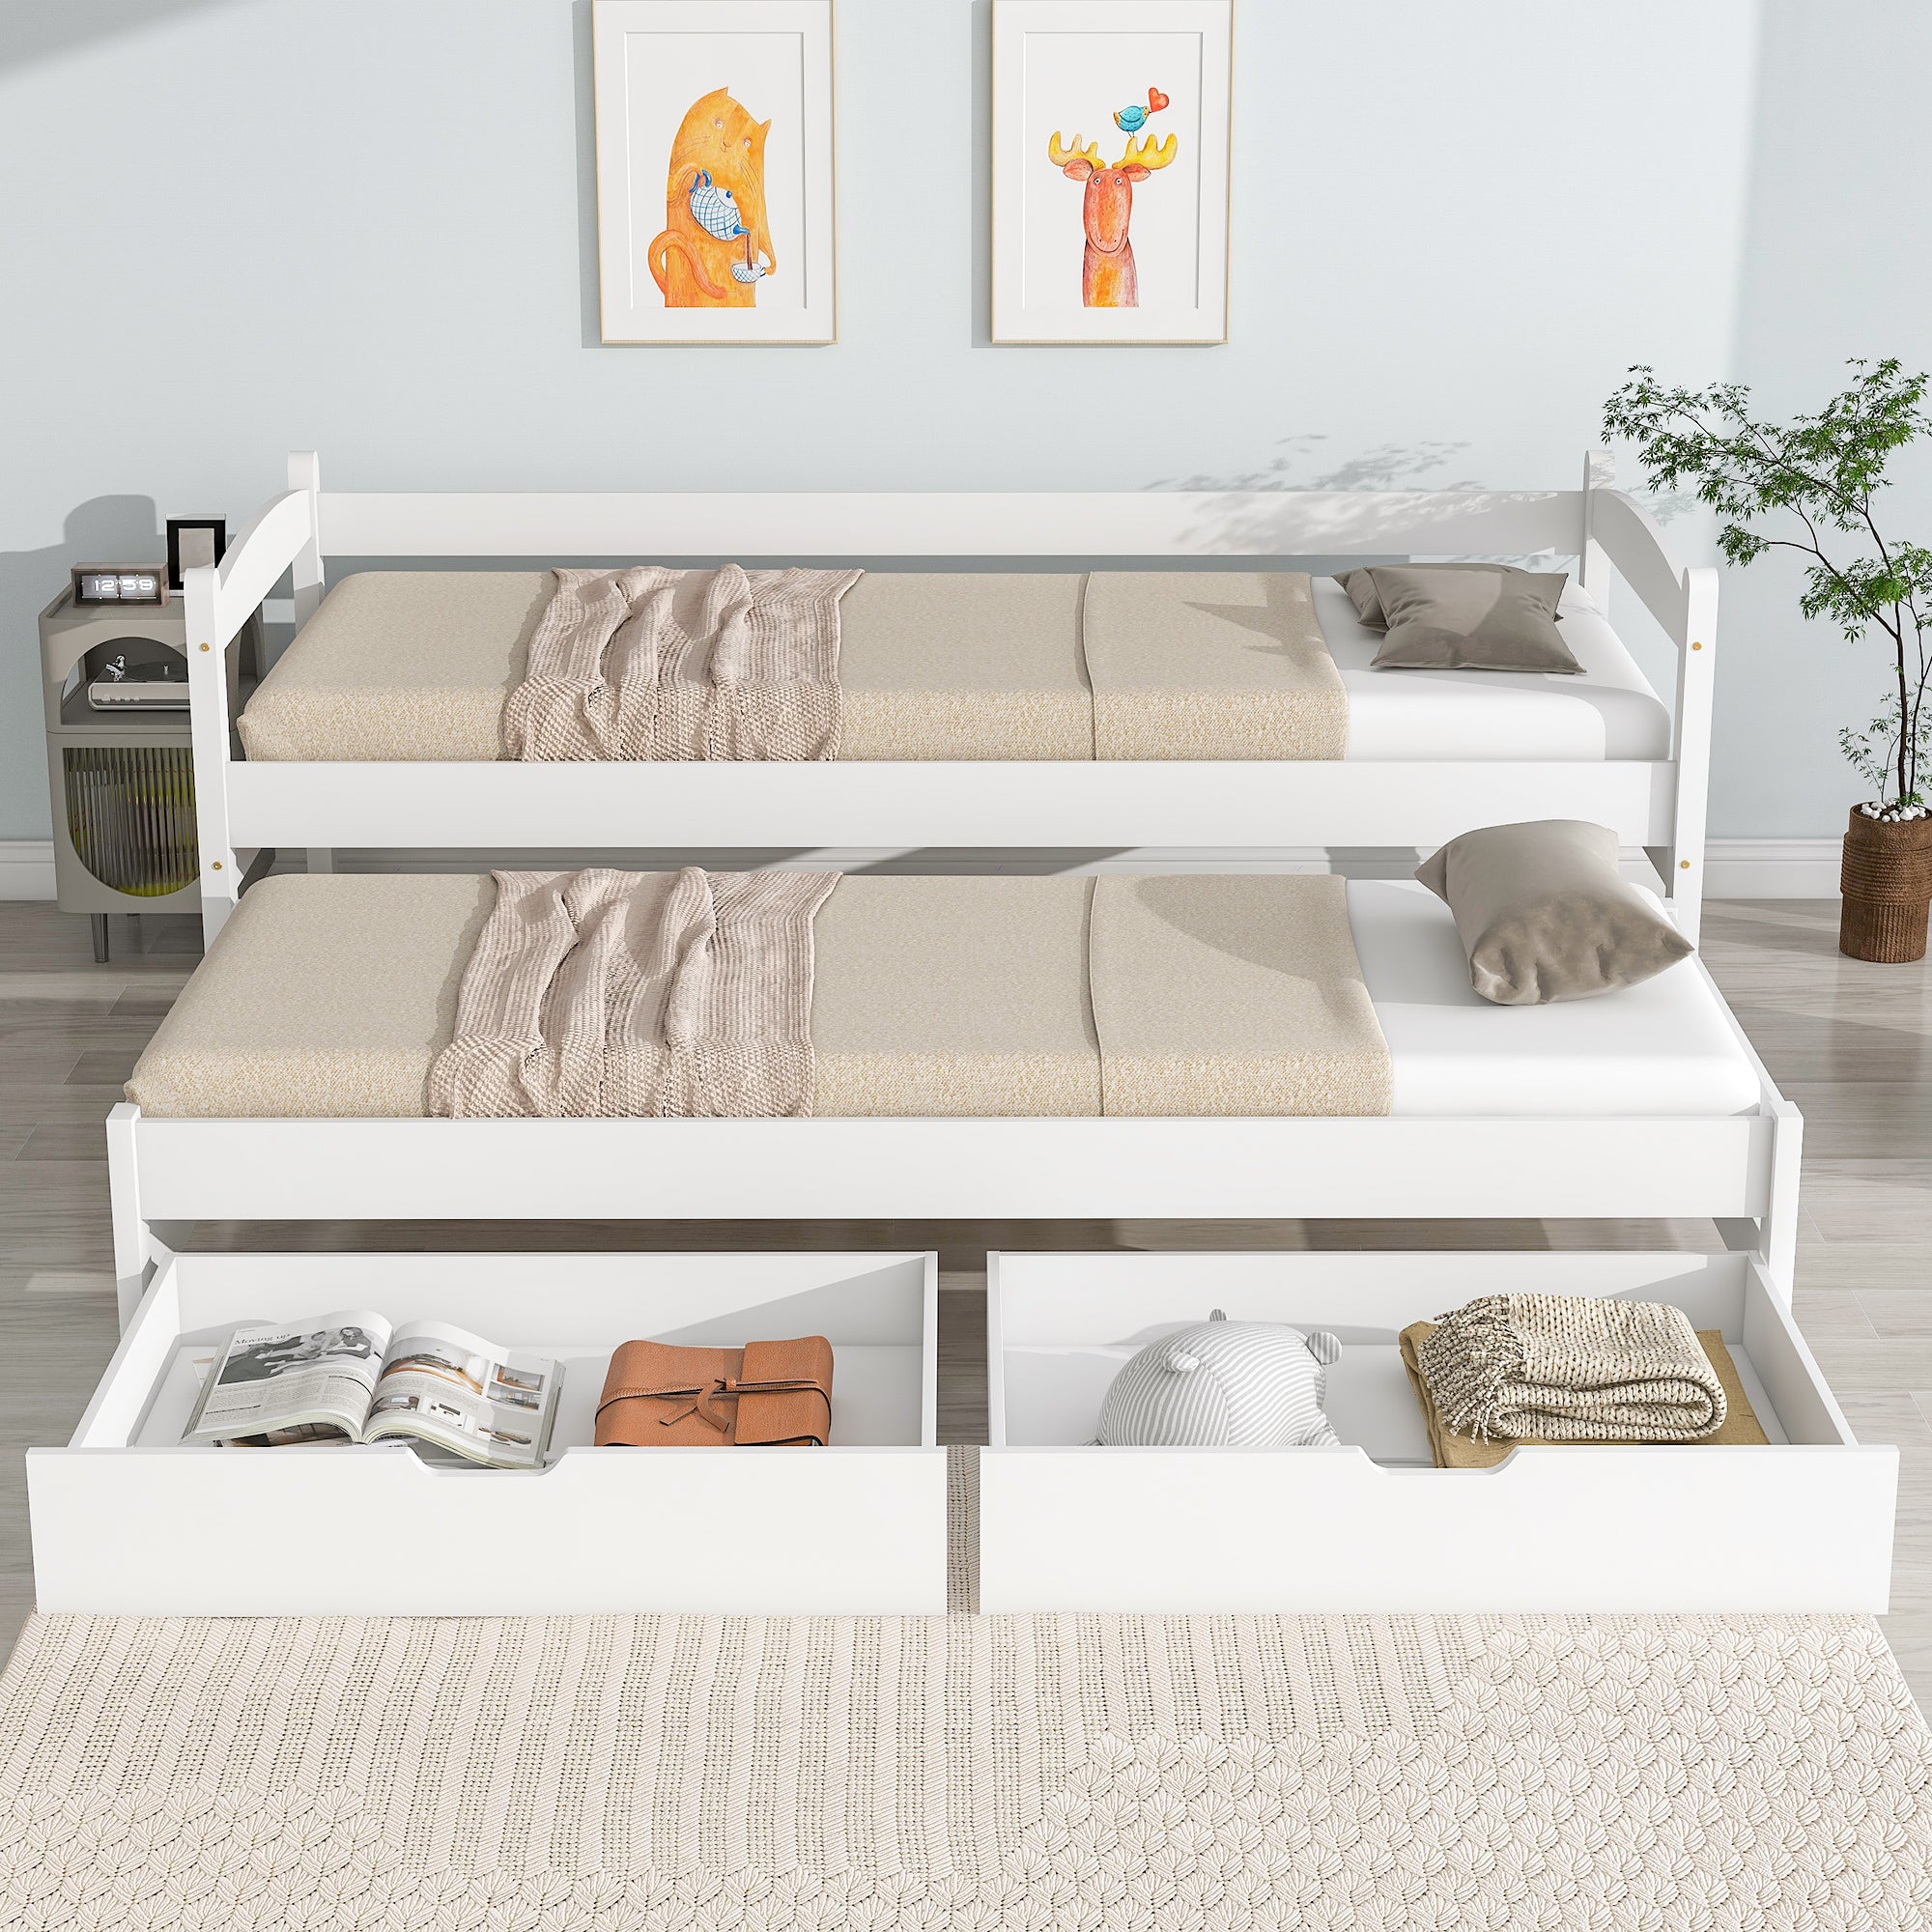 Tagesbett, Einzel- und Doppelbett, Schiebebett mit Rollen unten, mit 2 MDF-Schubladen, Massivholzrahmen, weiß (200x90cm/190x90cm)